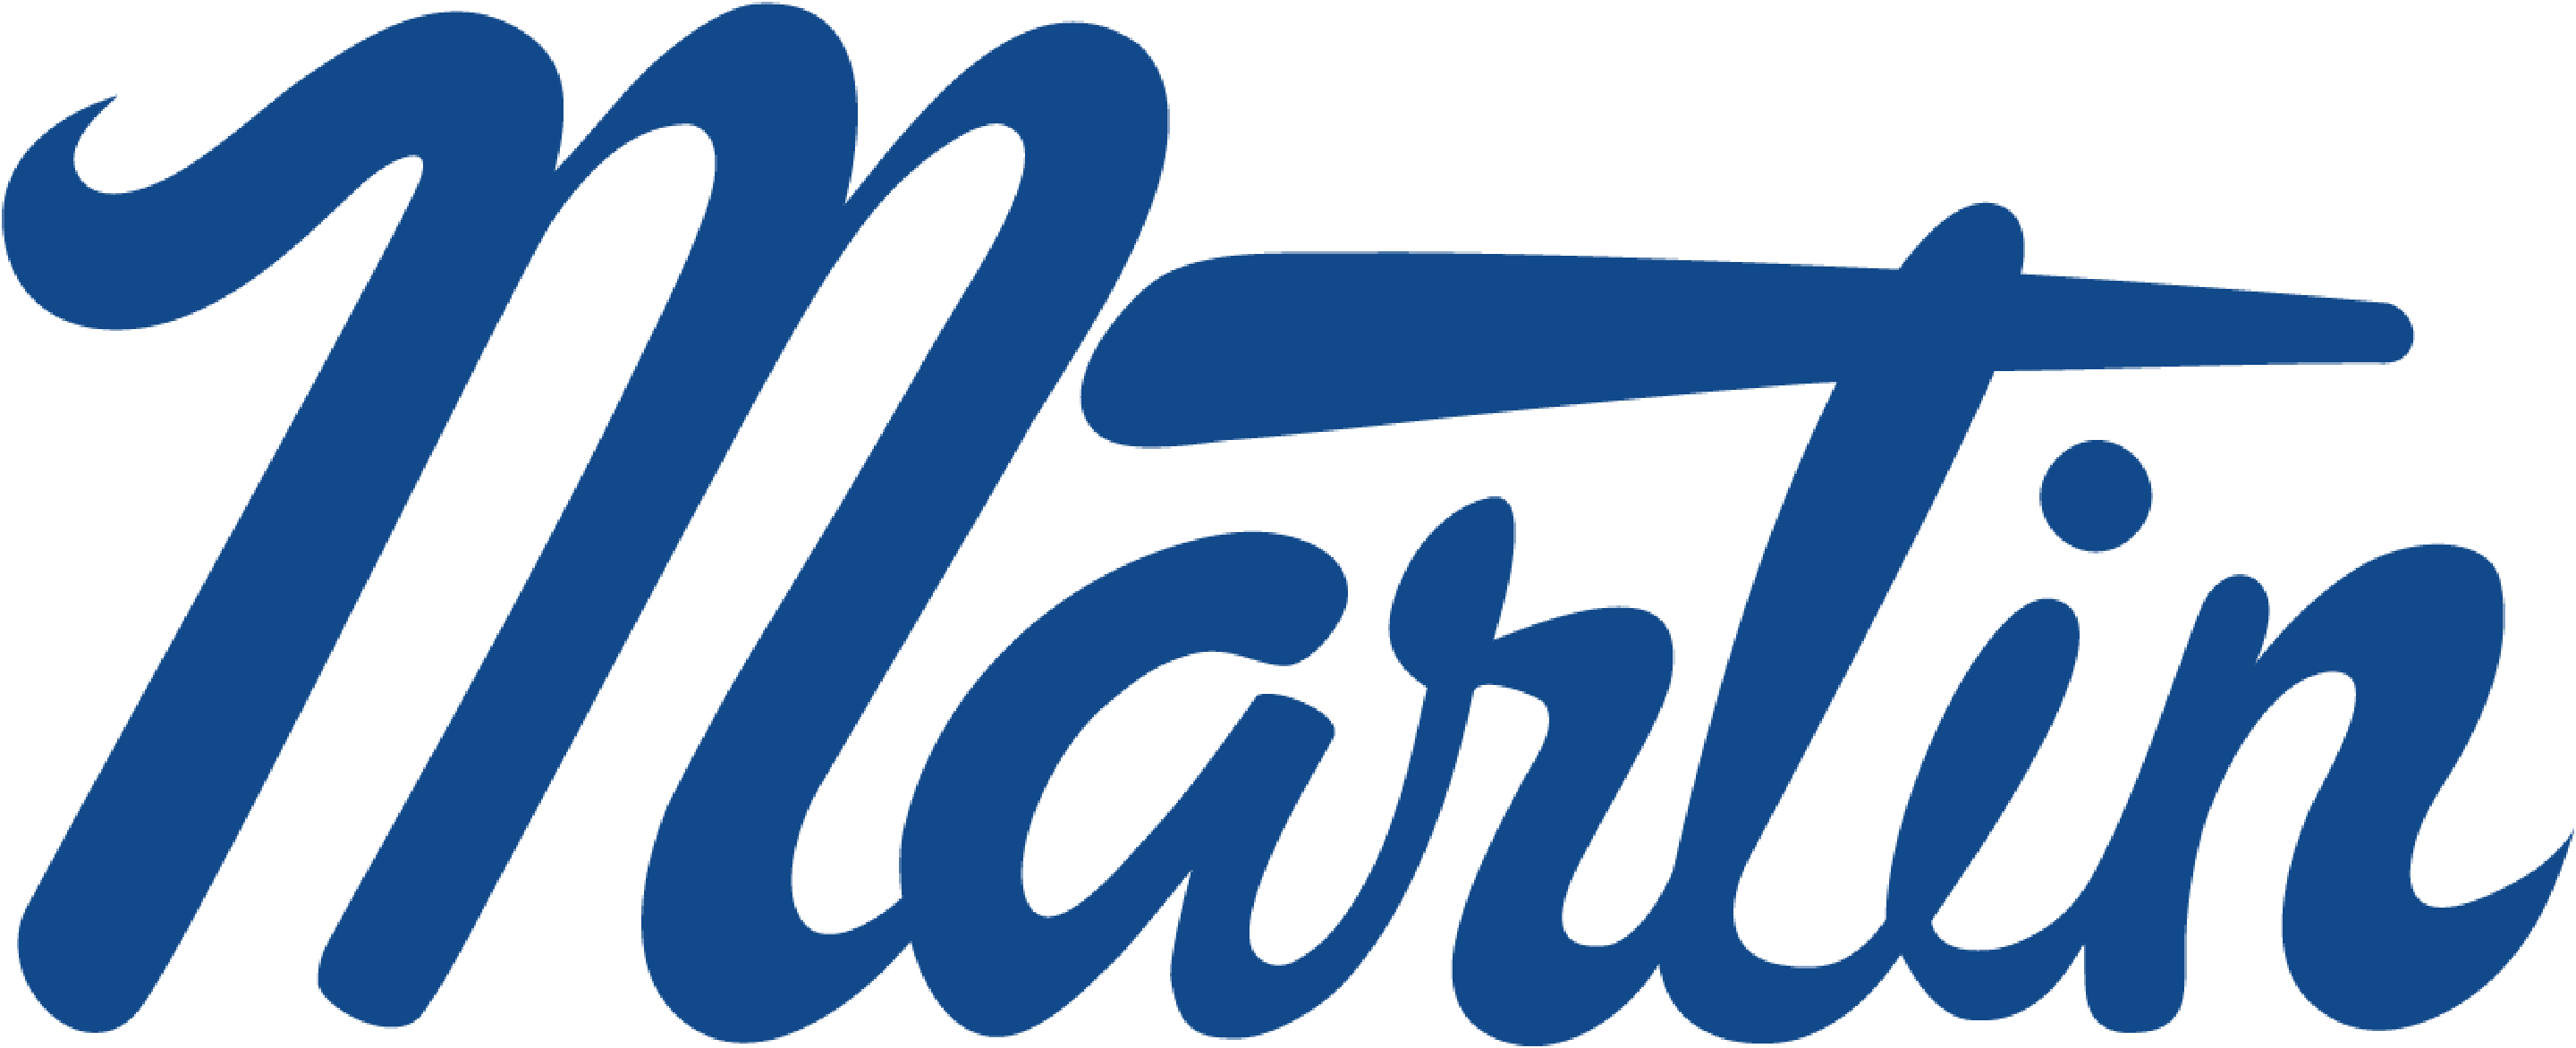 Bushings - Martin Sprocket Logo (2880x1172)